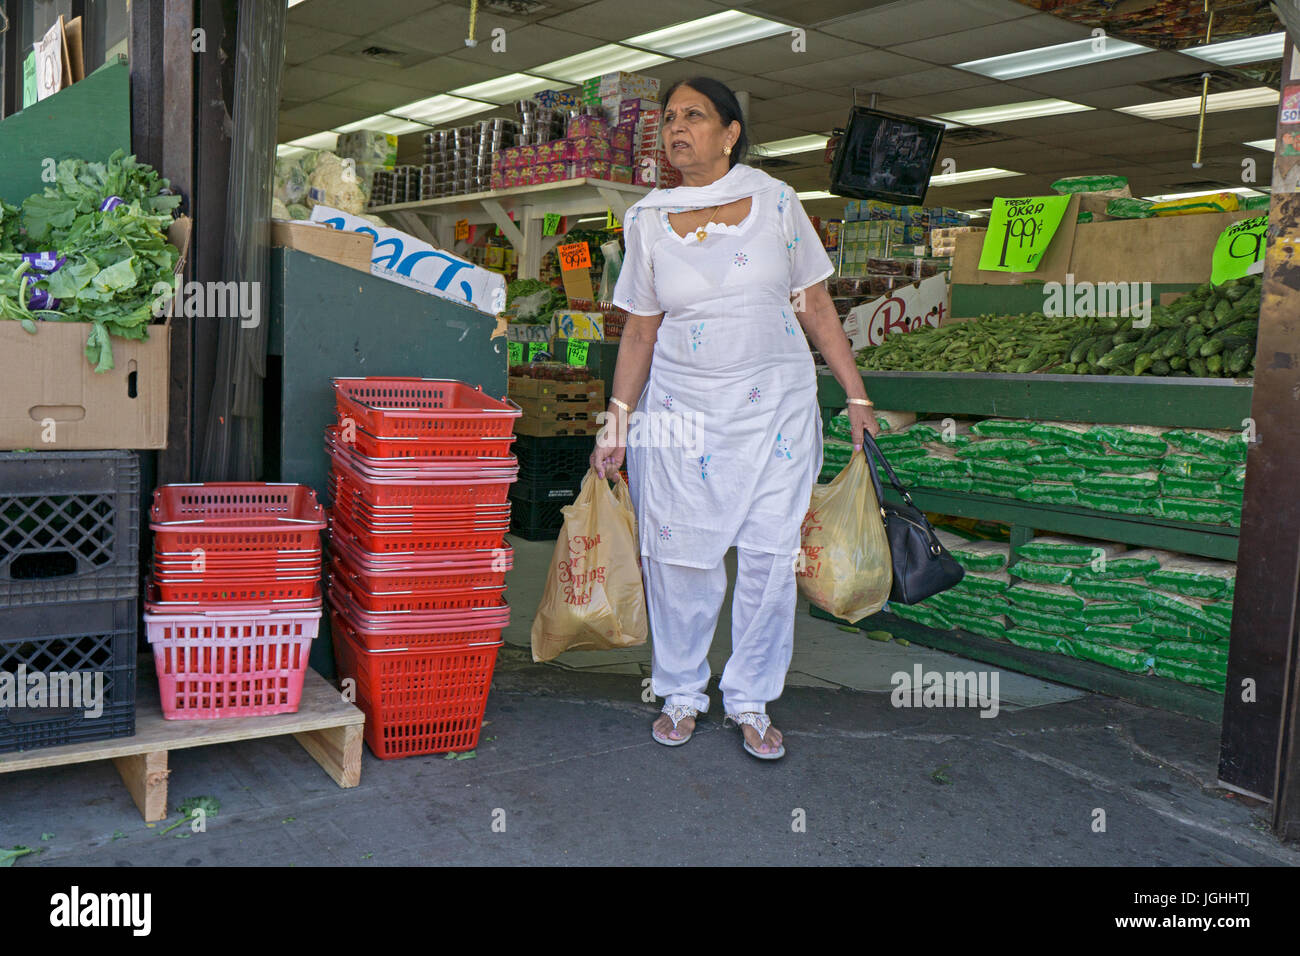 Asiatische Frauen in ethnische Mode einkaufen in einem Supermarkt an der 37th Avenue in Jackson Heights, Queens, New York City. Stockfoto